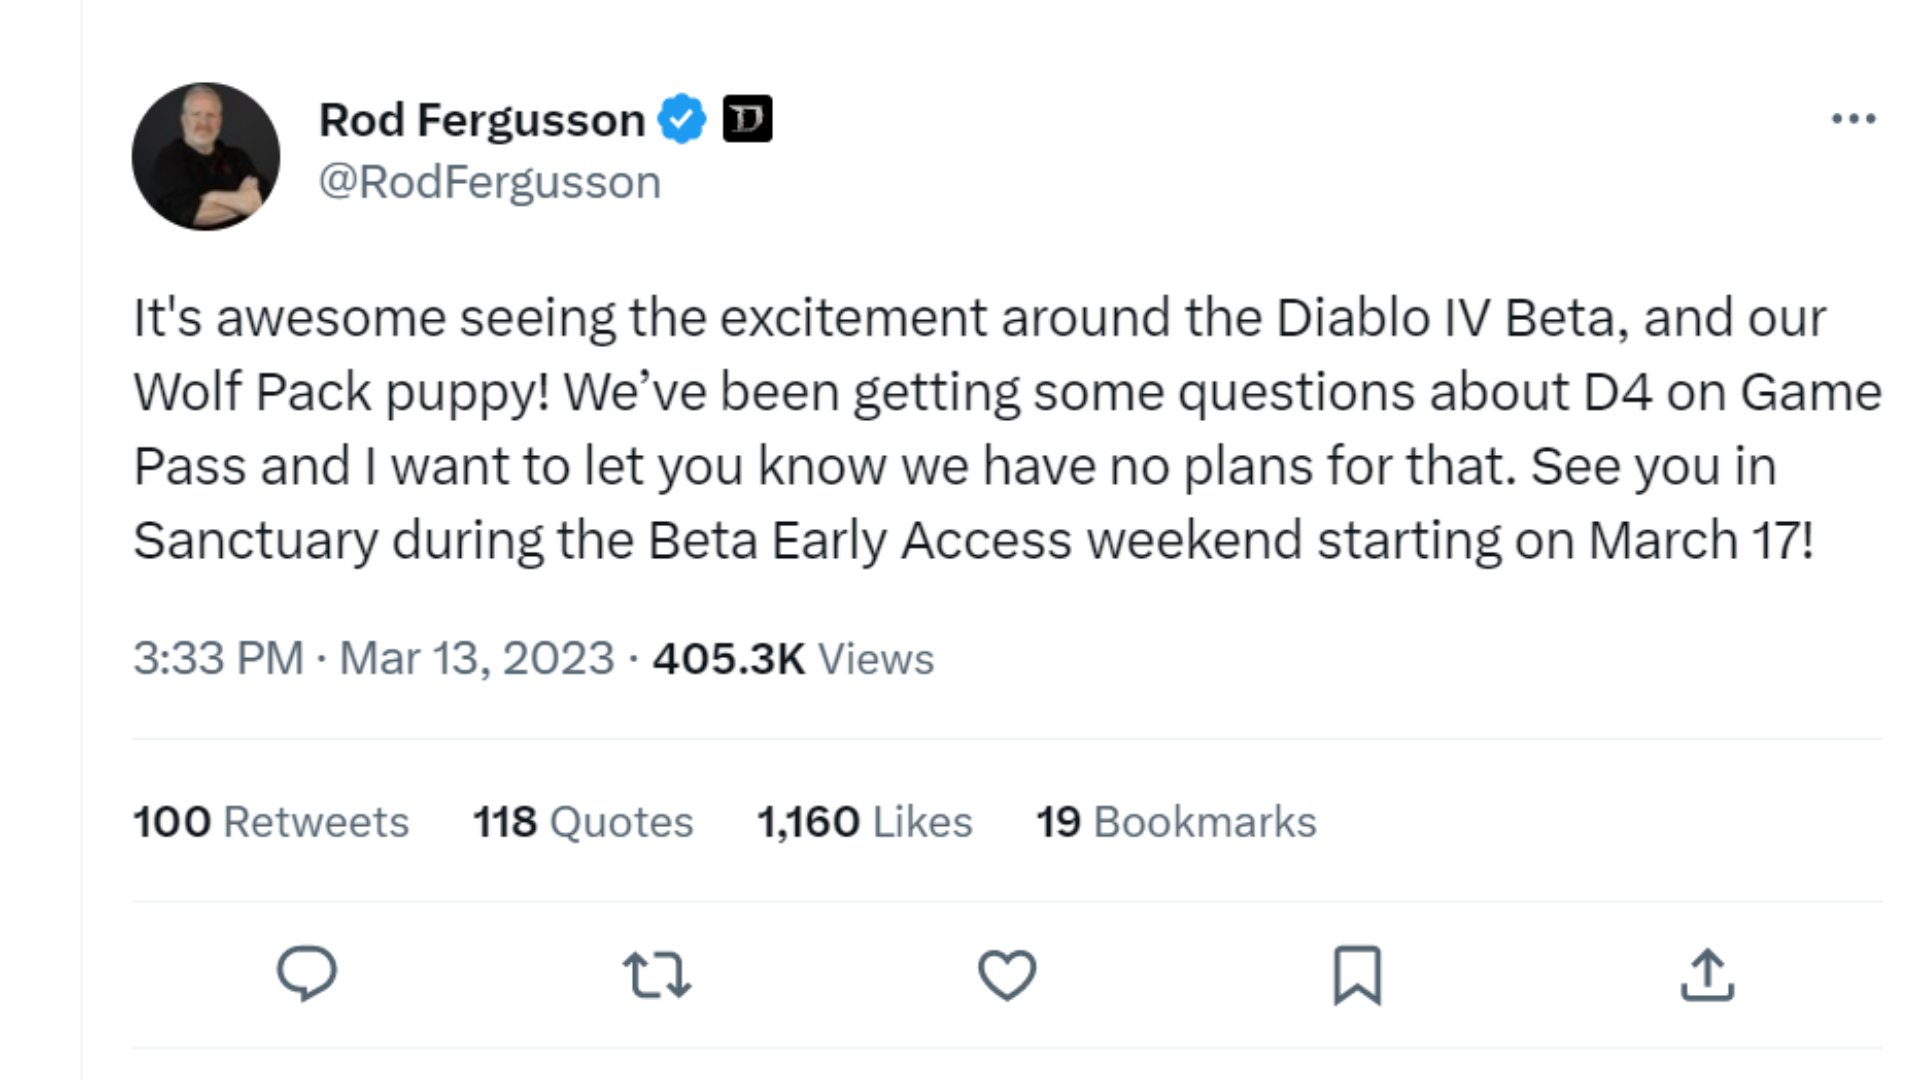 Rod Fergusson confirmando que no hay planes para Diablo 4 en Game Pass.